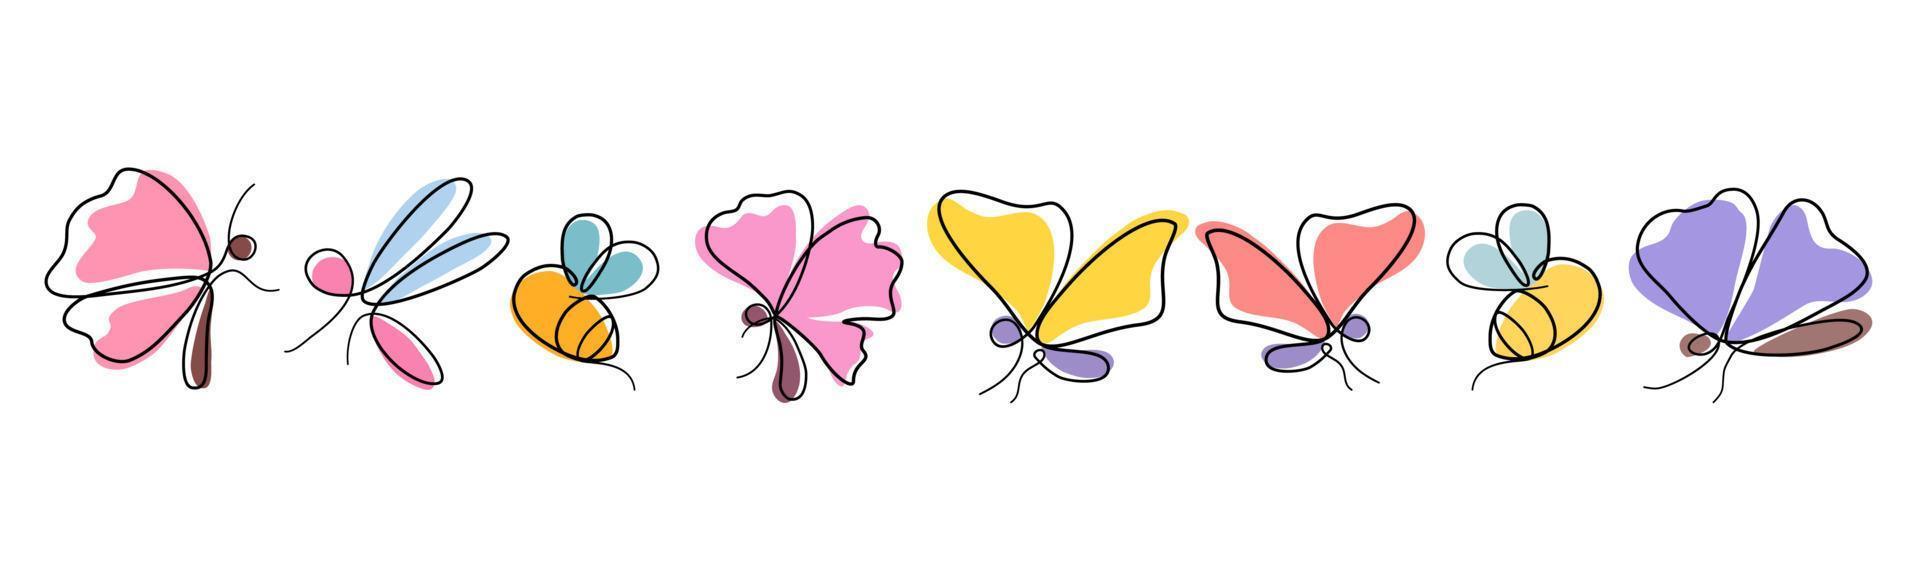 conjunto abstrato de borboleta, libélula e abelha projetado em estilo simples doodle para cartões, vestuário, tecidos, motivos de papel, impressões digitais. decorações com tema de primavera, almofadas, canecas, bolsas, etc. vetor